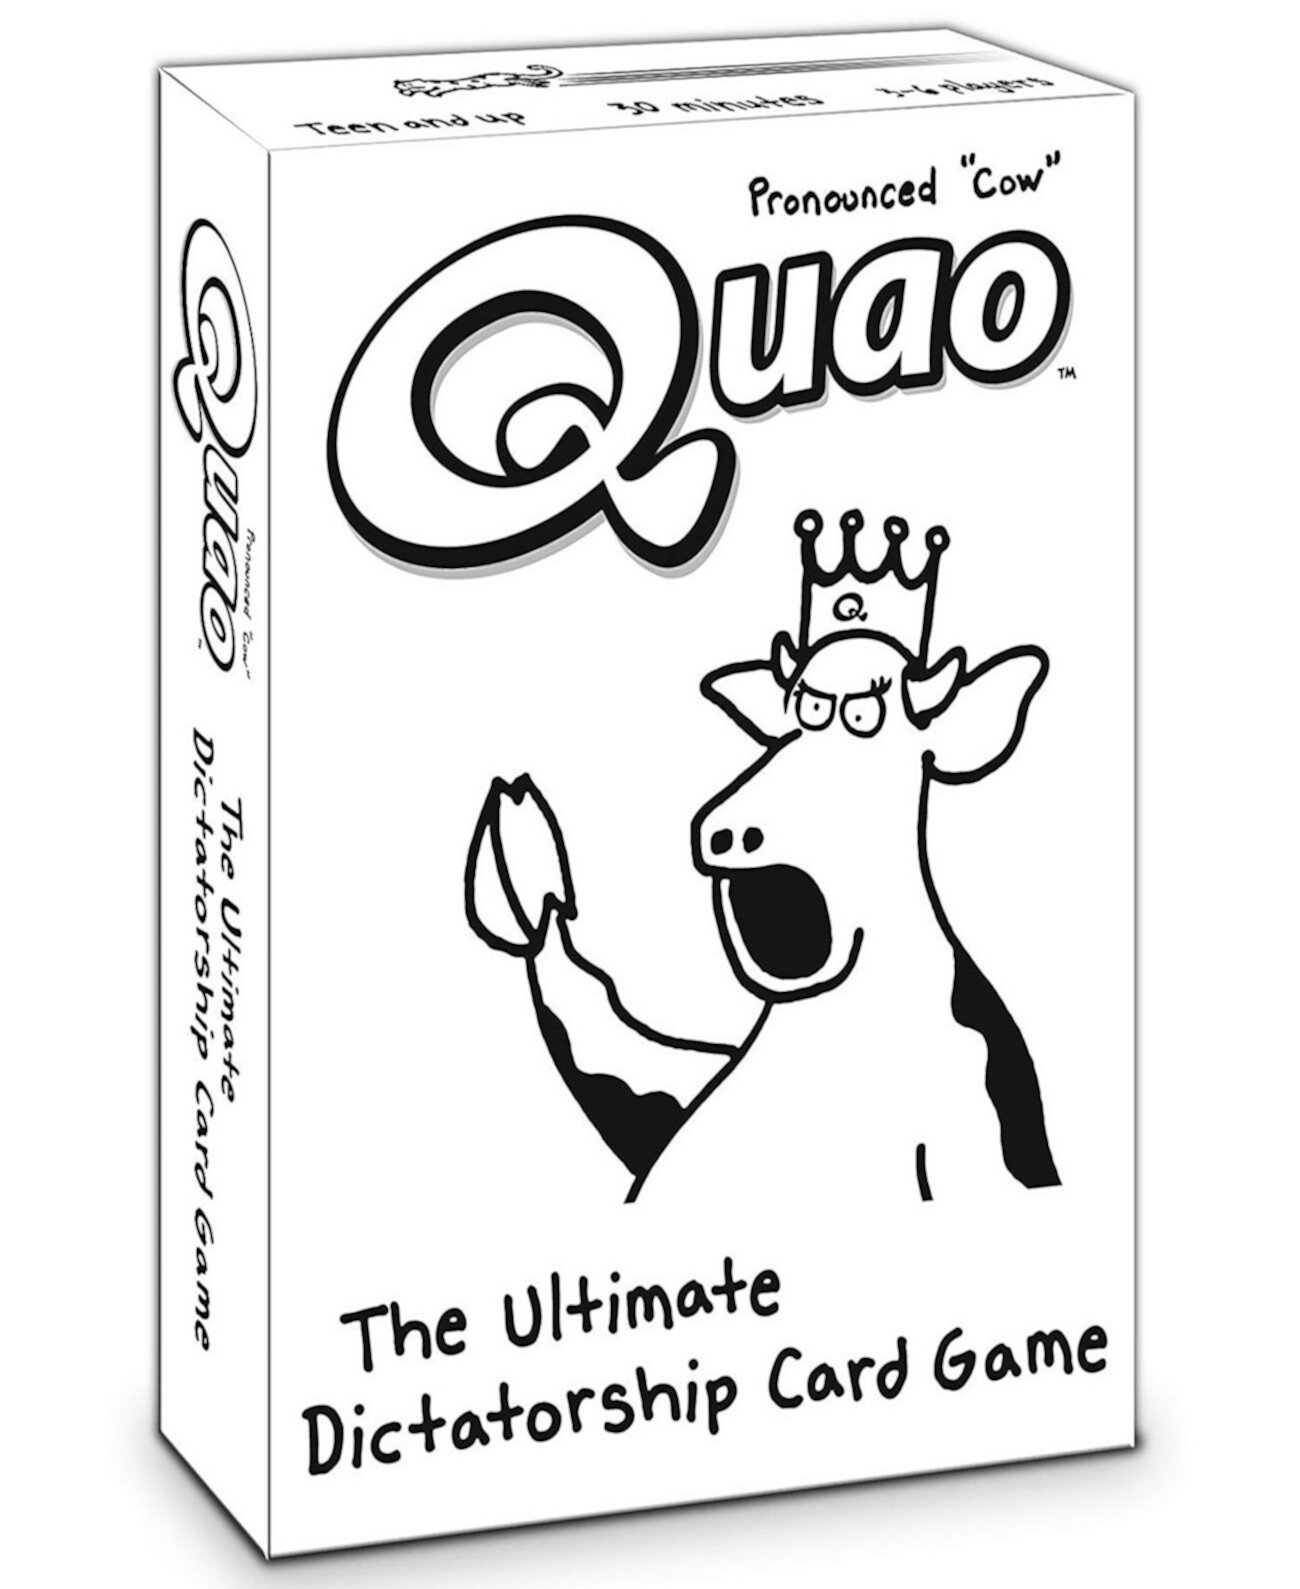 Набор карточных игр Quao 127 для социальных групп, подростков, студентов и семей, веселая игра для вечеринок Zobmondo